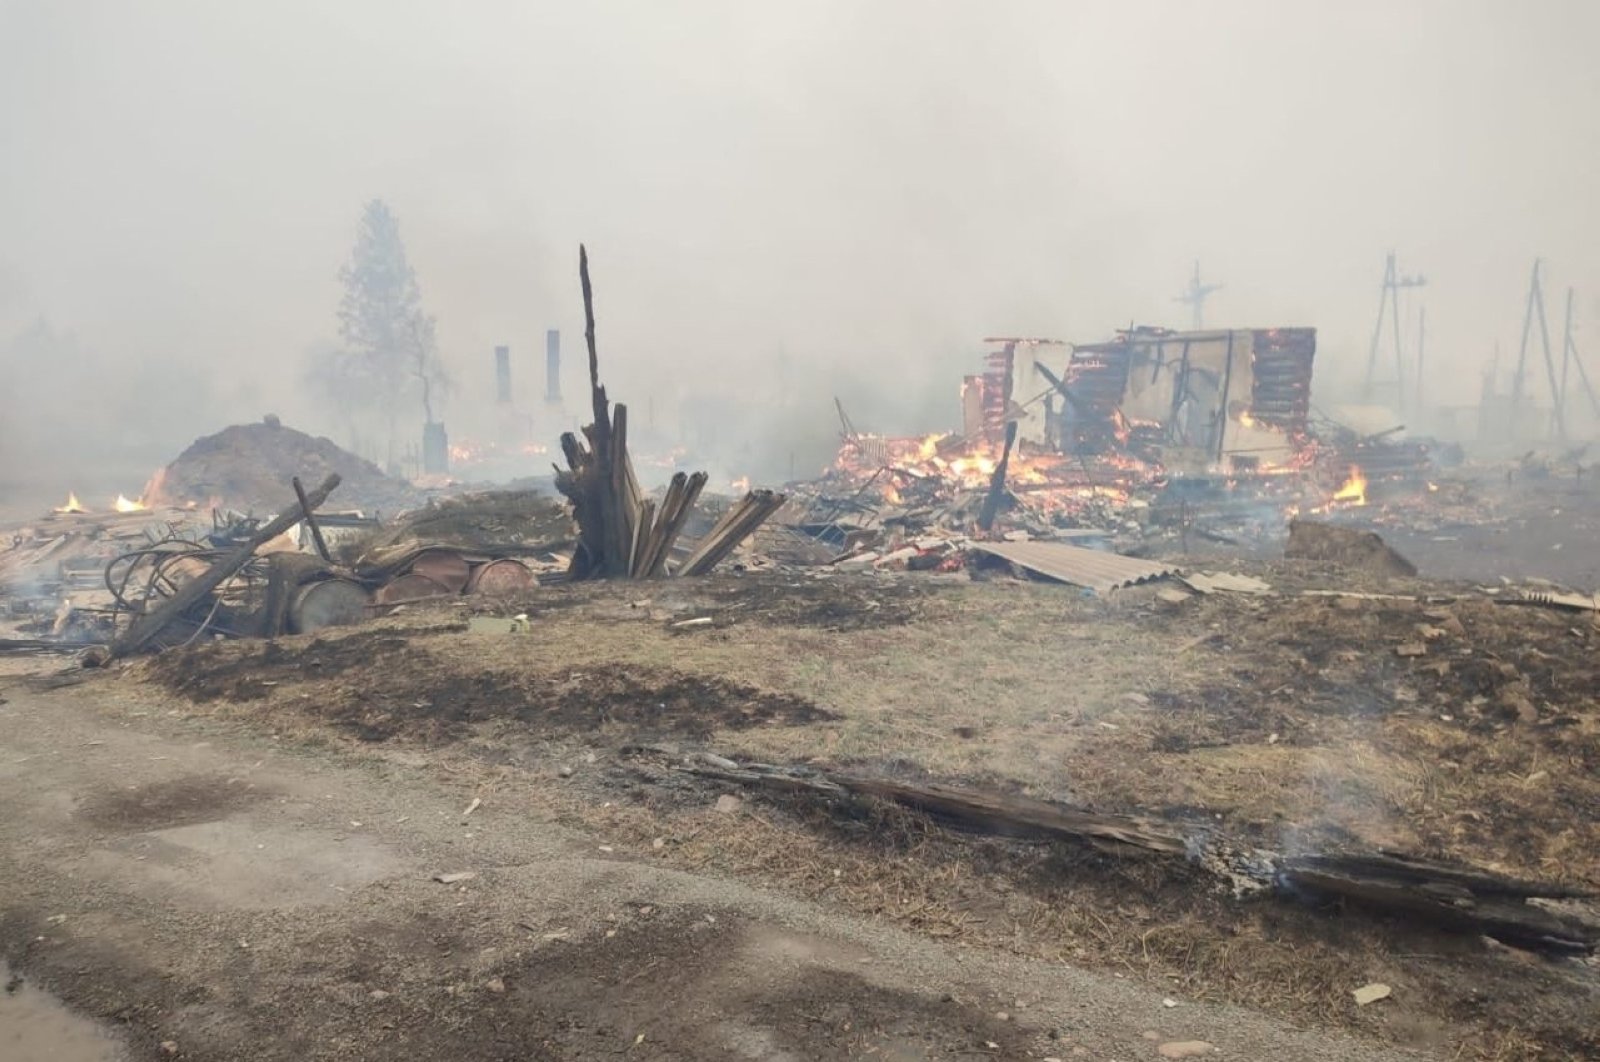 Kebakaran menewaskan sedikitnya 8 orang di Siberia karena angin kencang menghambat penyelamatan